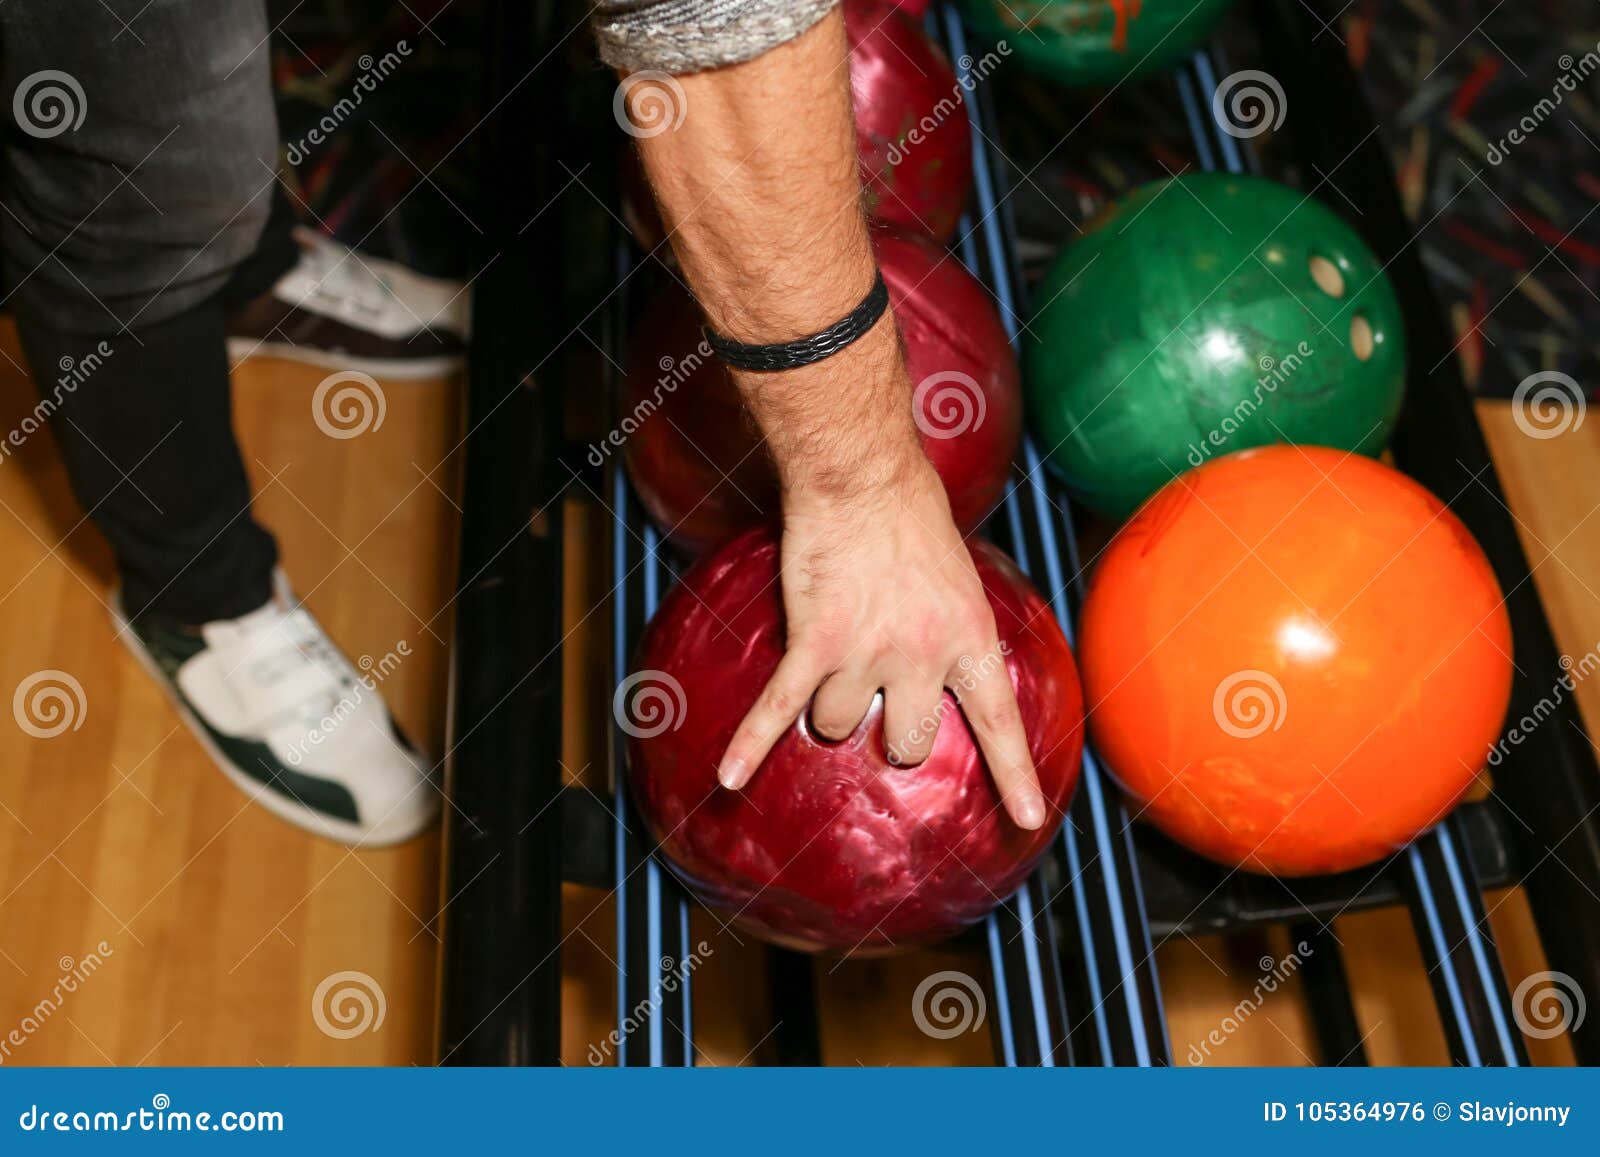 Кинуть шарик. Мяч для боулинга. Шар от боулинга в руке. Рука в шаре для боулинга. Цвет мячей в боулинге.